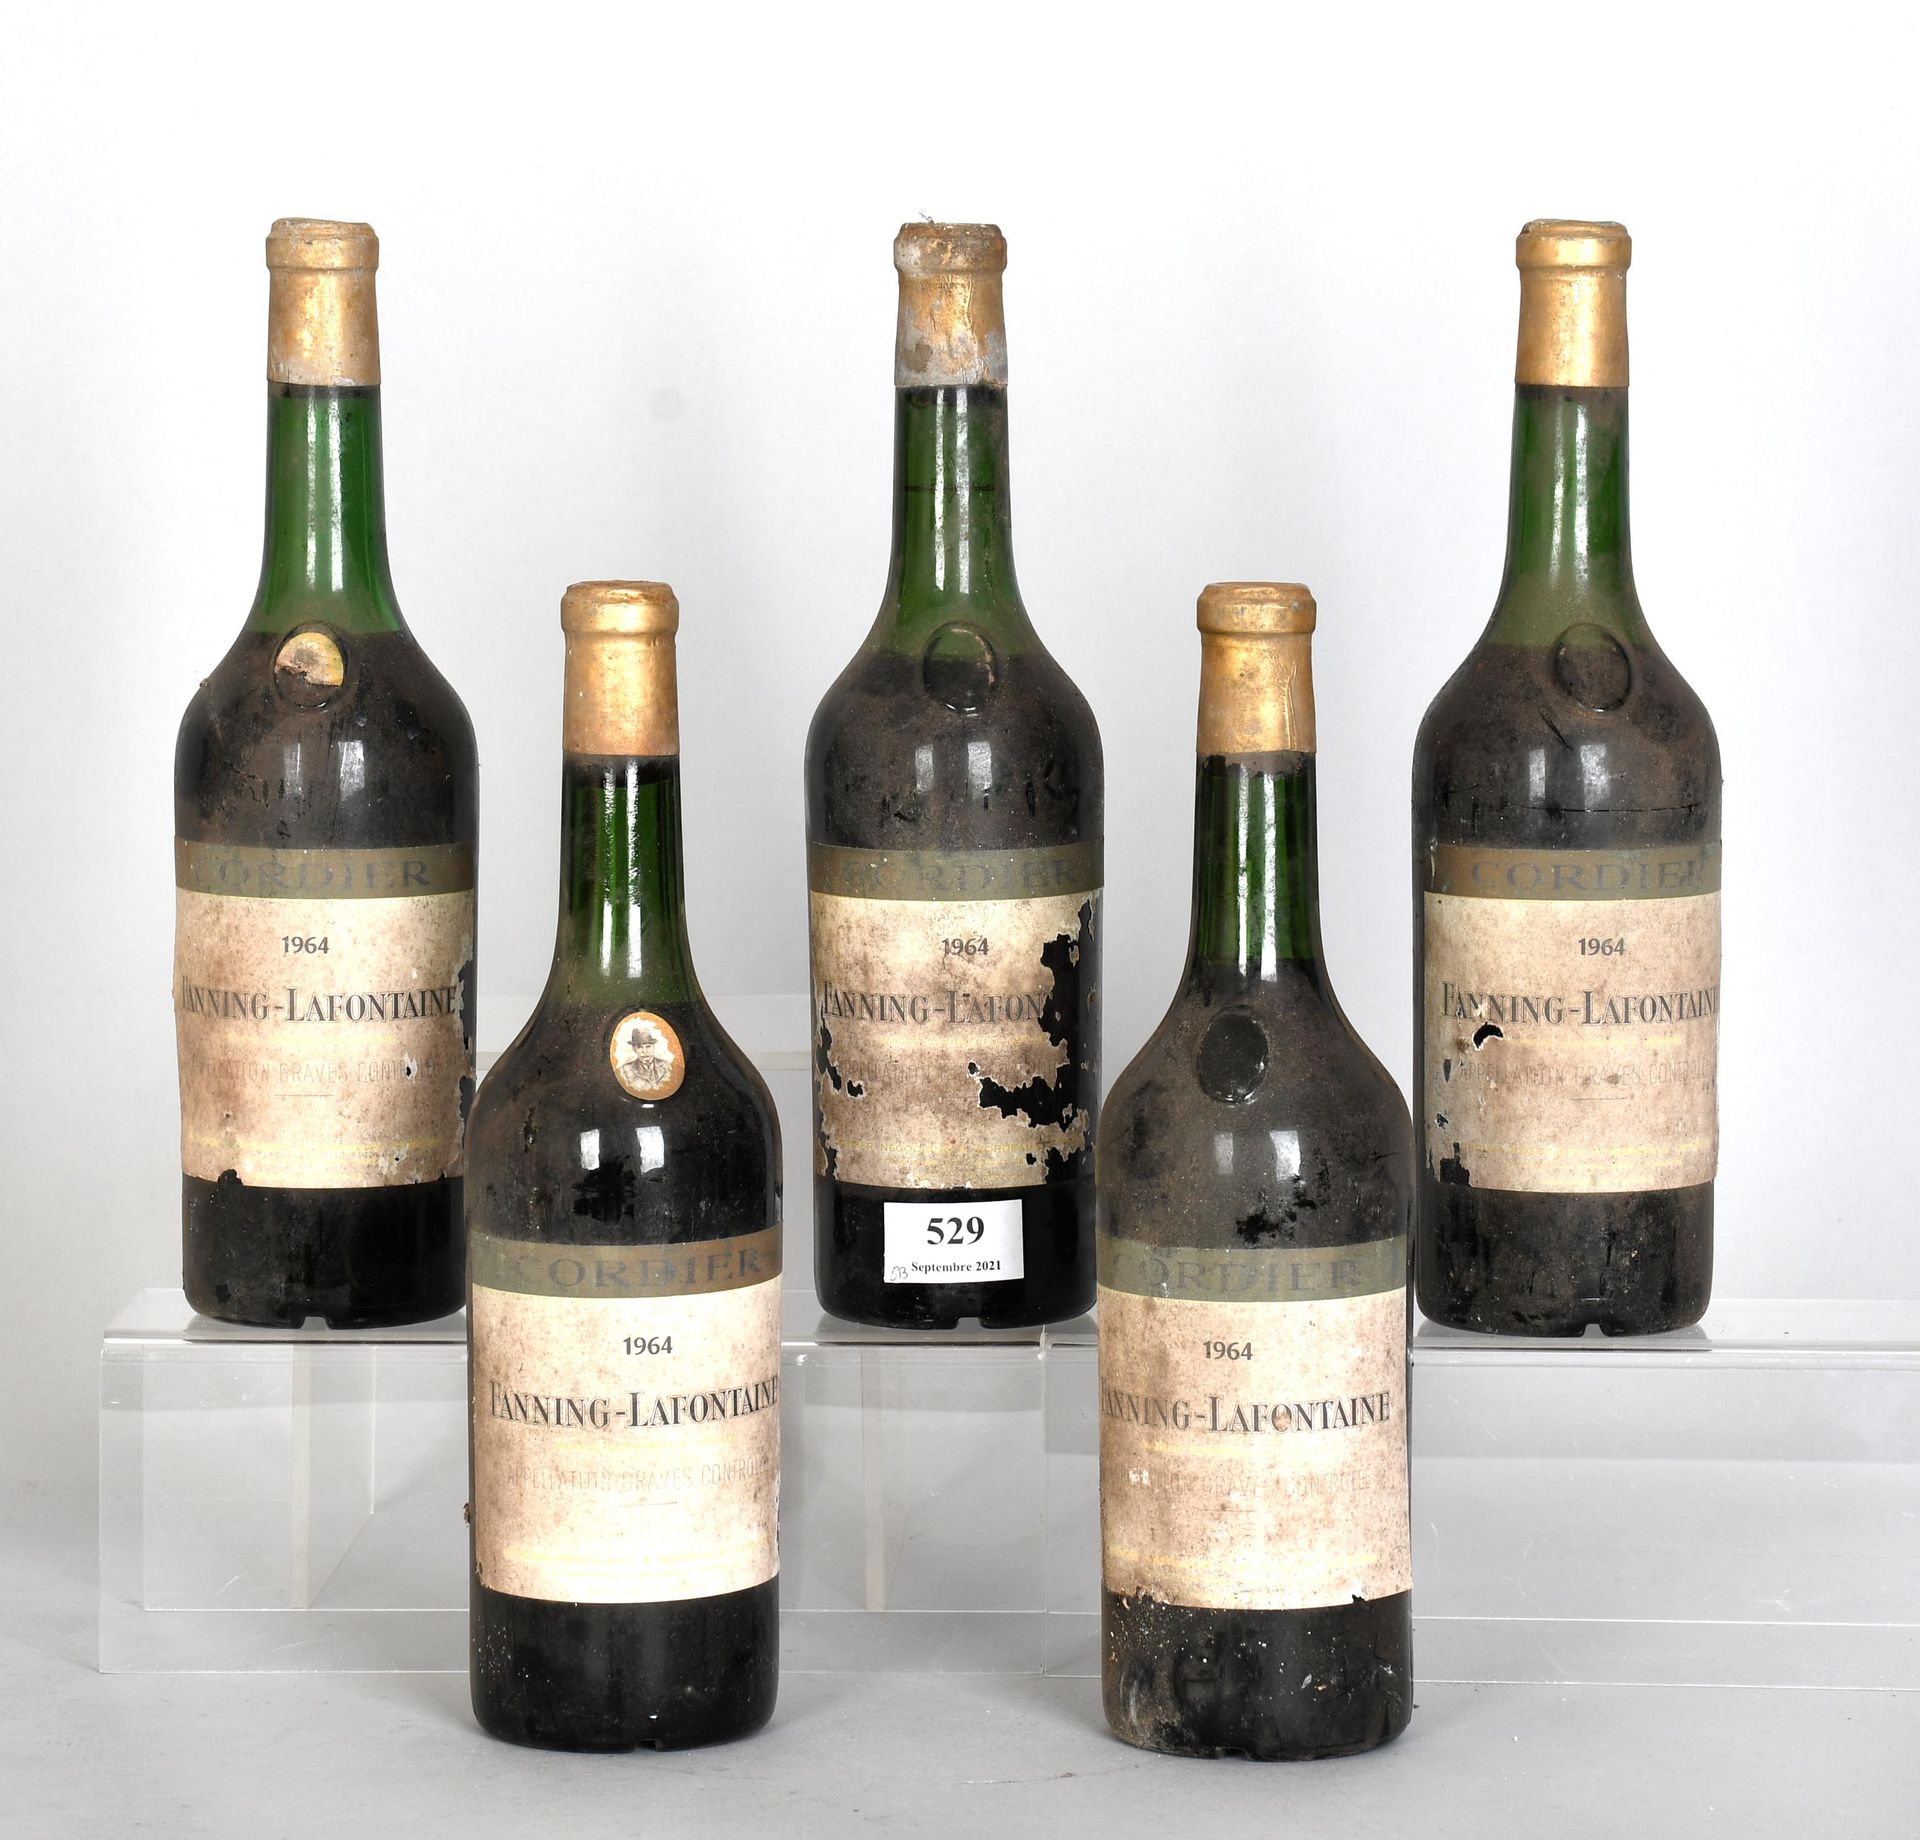 Null Fanning-Lafontaine 1964 - Cinque bottiglie di vino

Graves. Diminuisce di l&hellip;